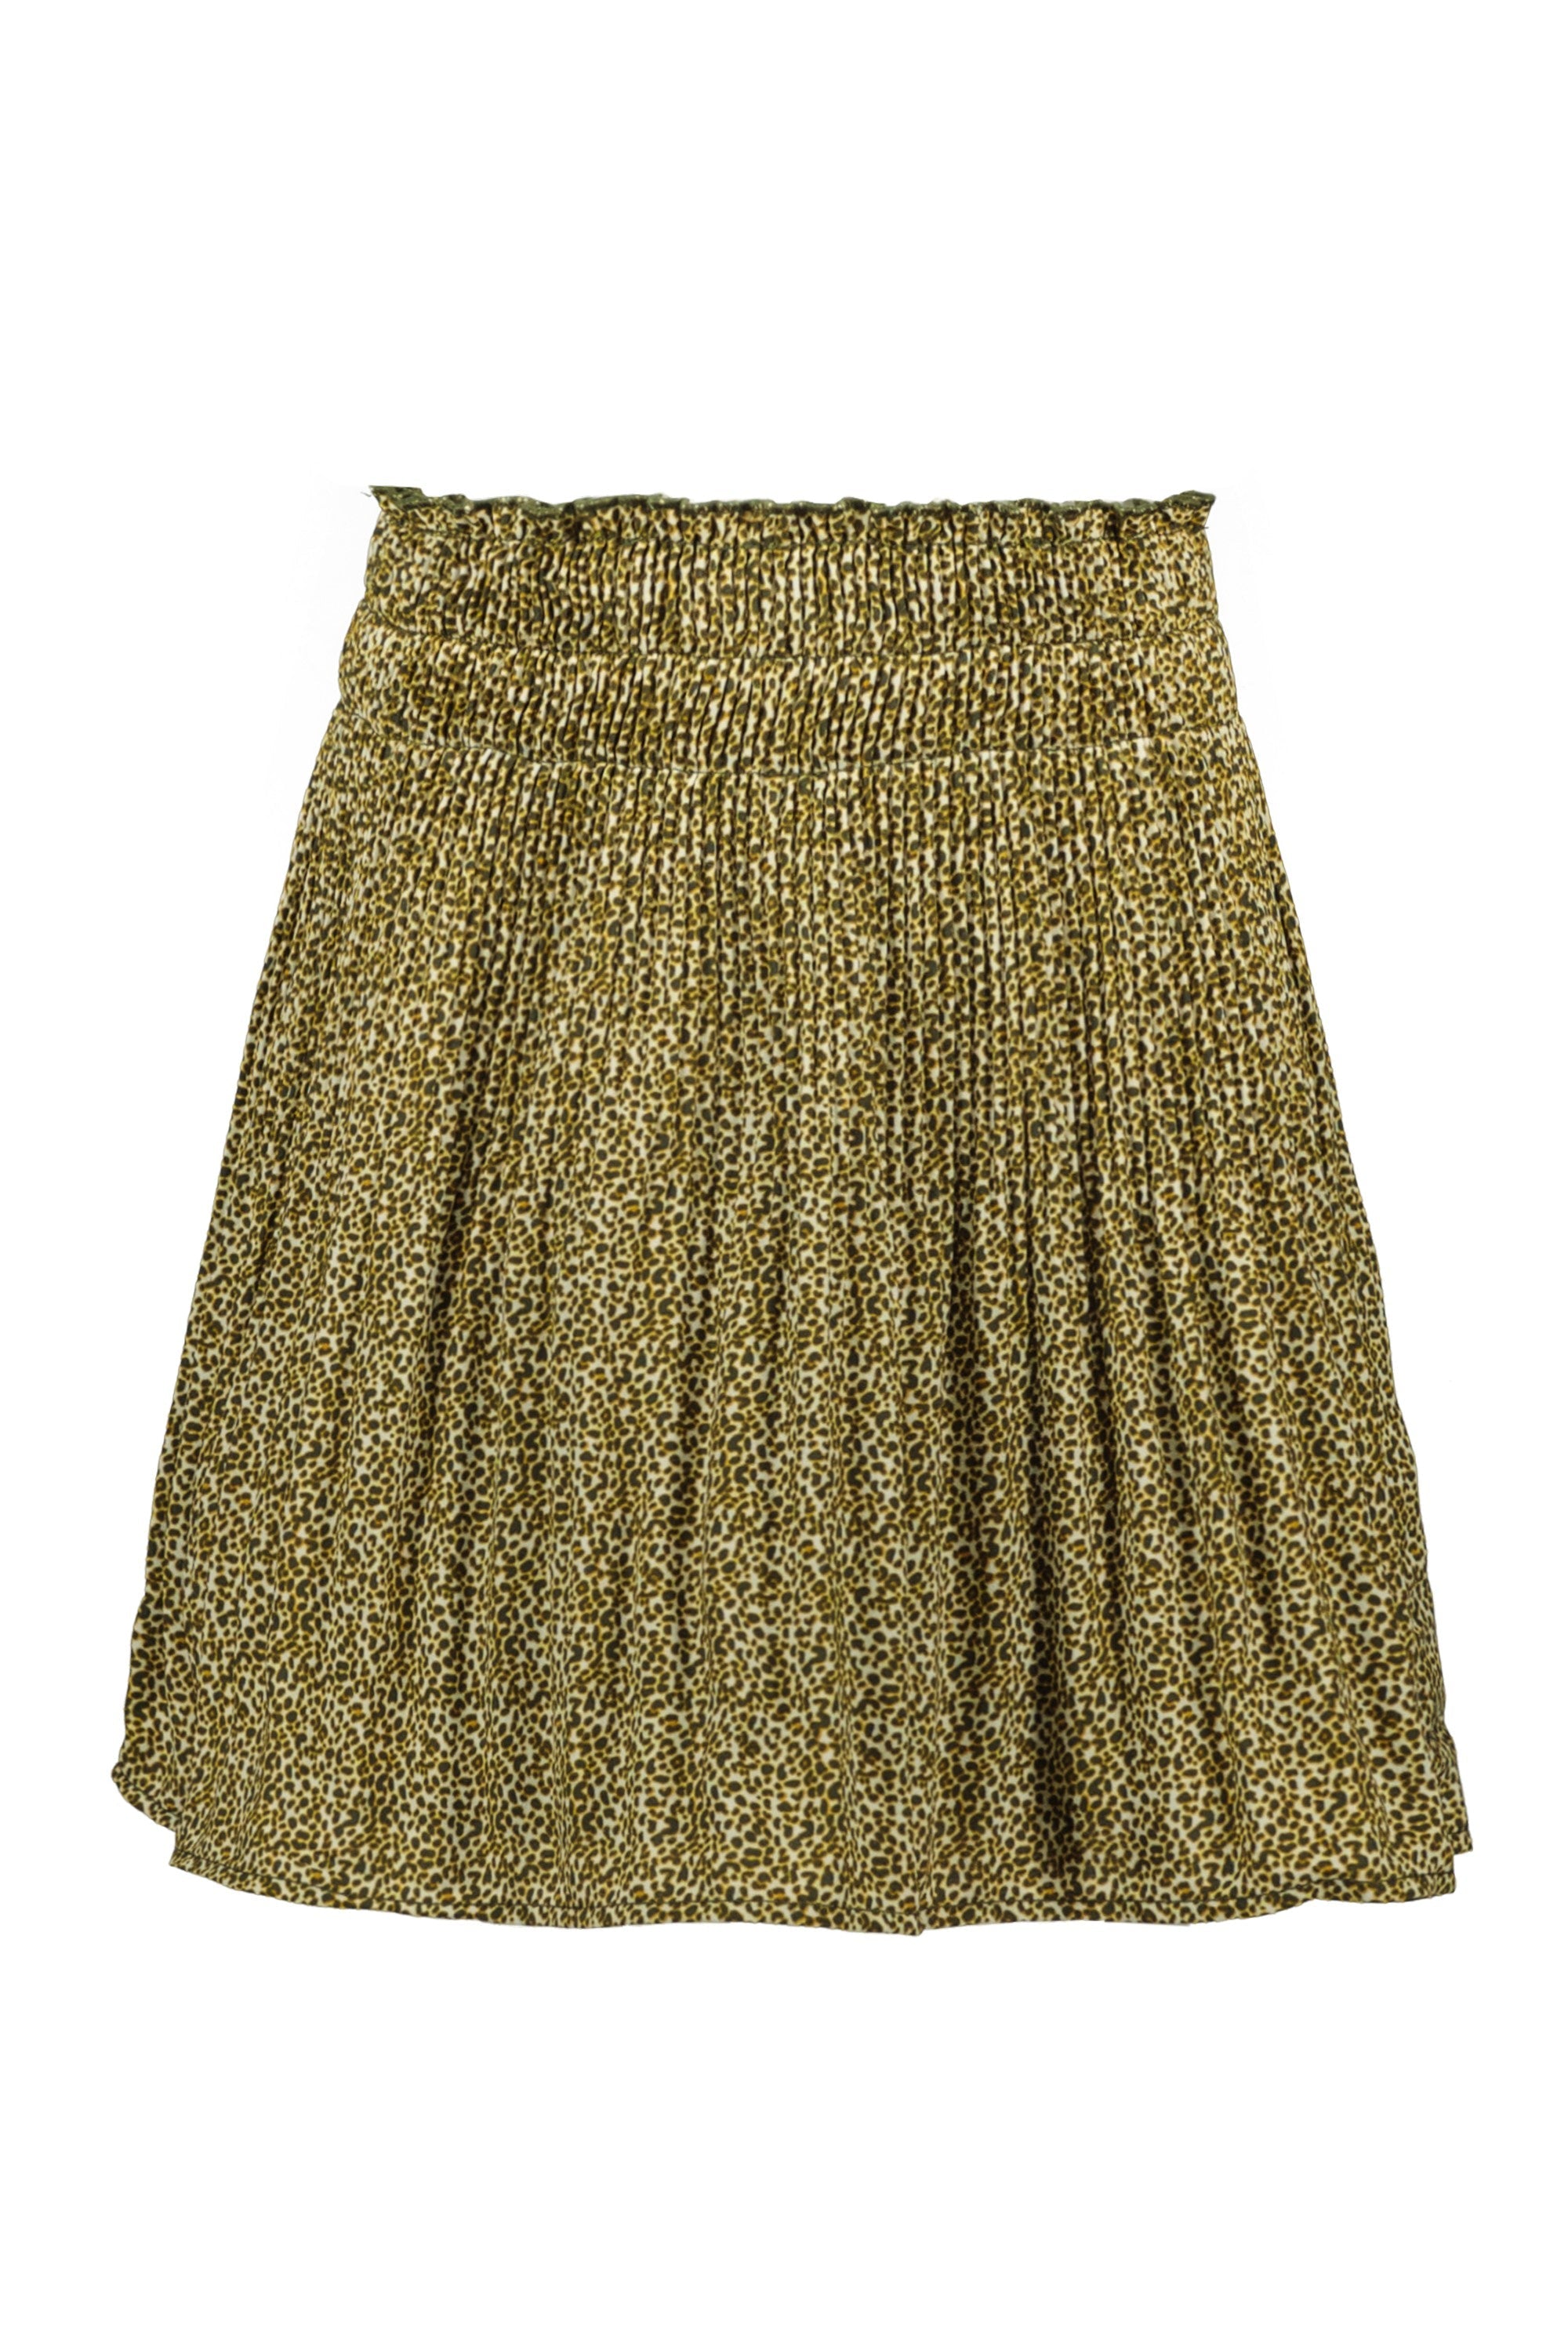 Meisjes Crepe Plisse Skirt van Like Flo in de kleur Animal in maat 152.